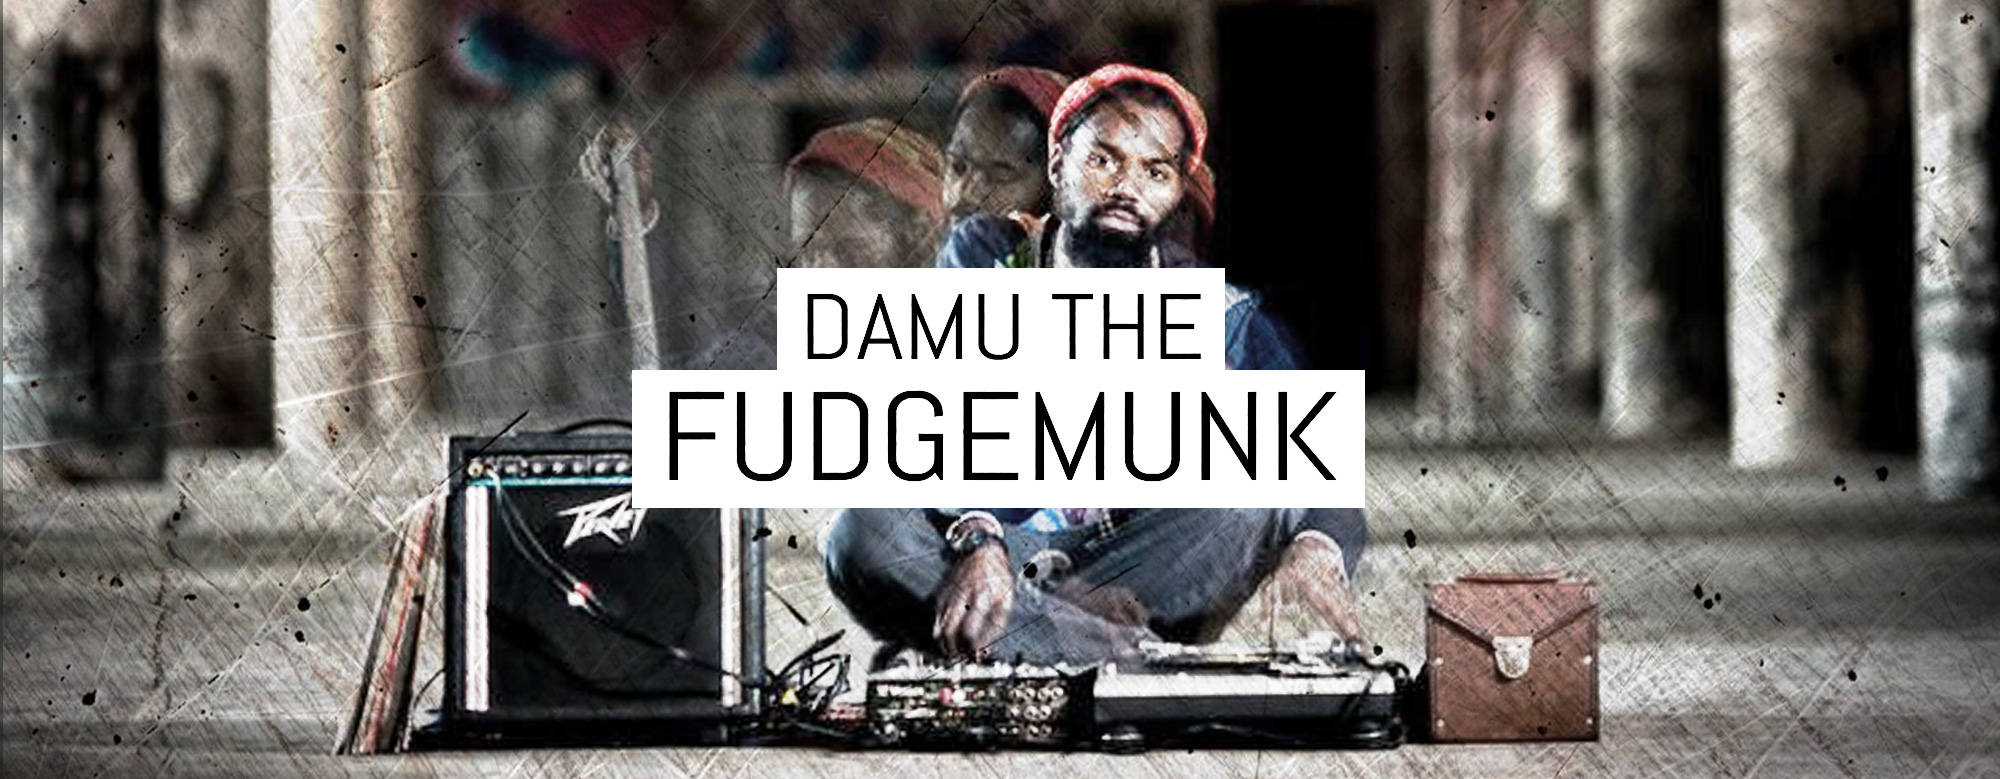 Damu The Fudgemunk